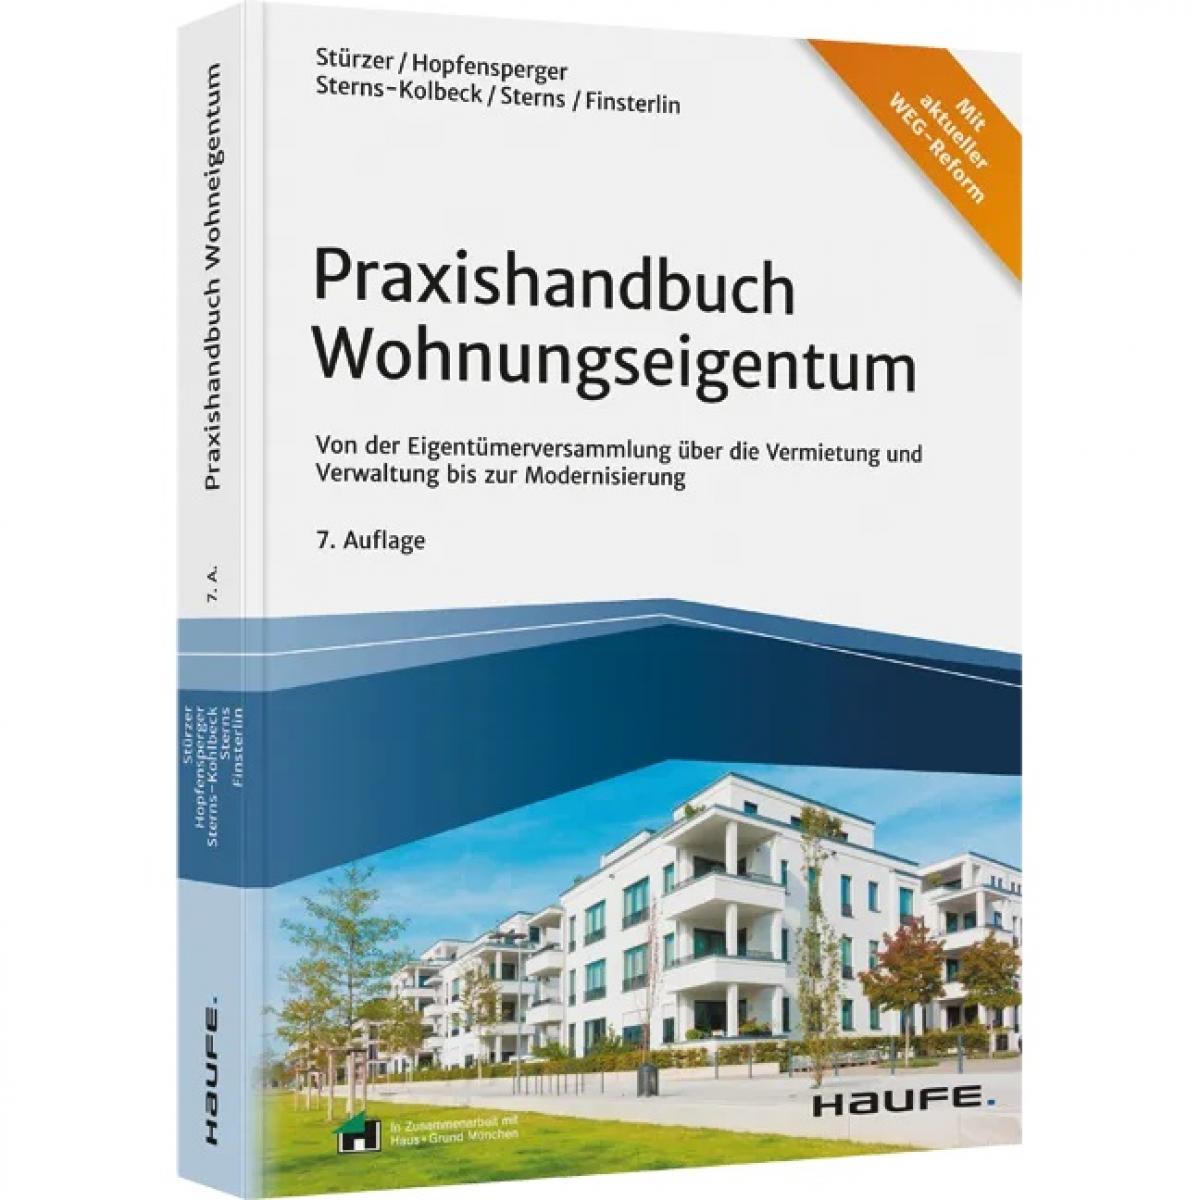 Praxishandbuch Wohnungseigentum - inkl. Arbeitshilfen online | Stürzer